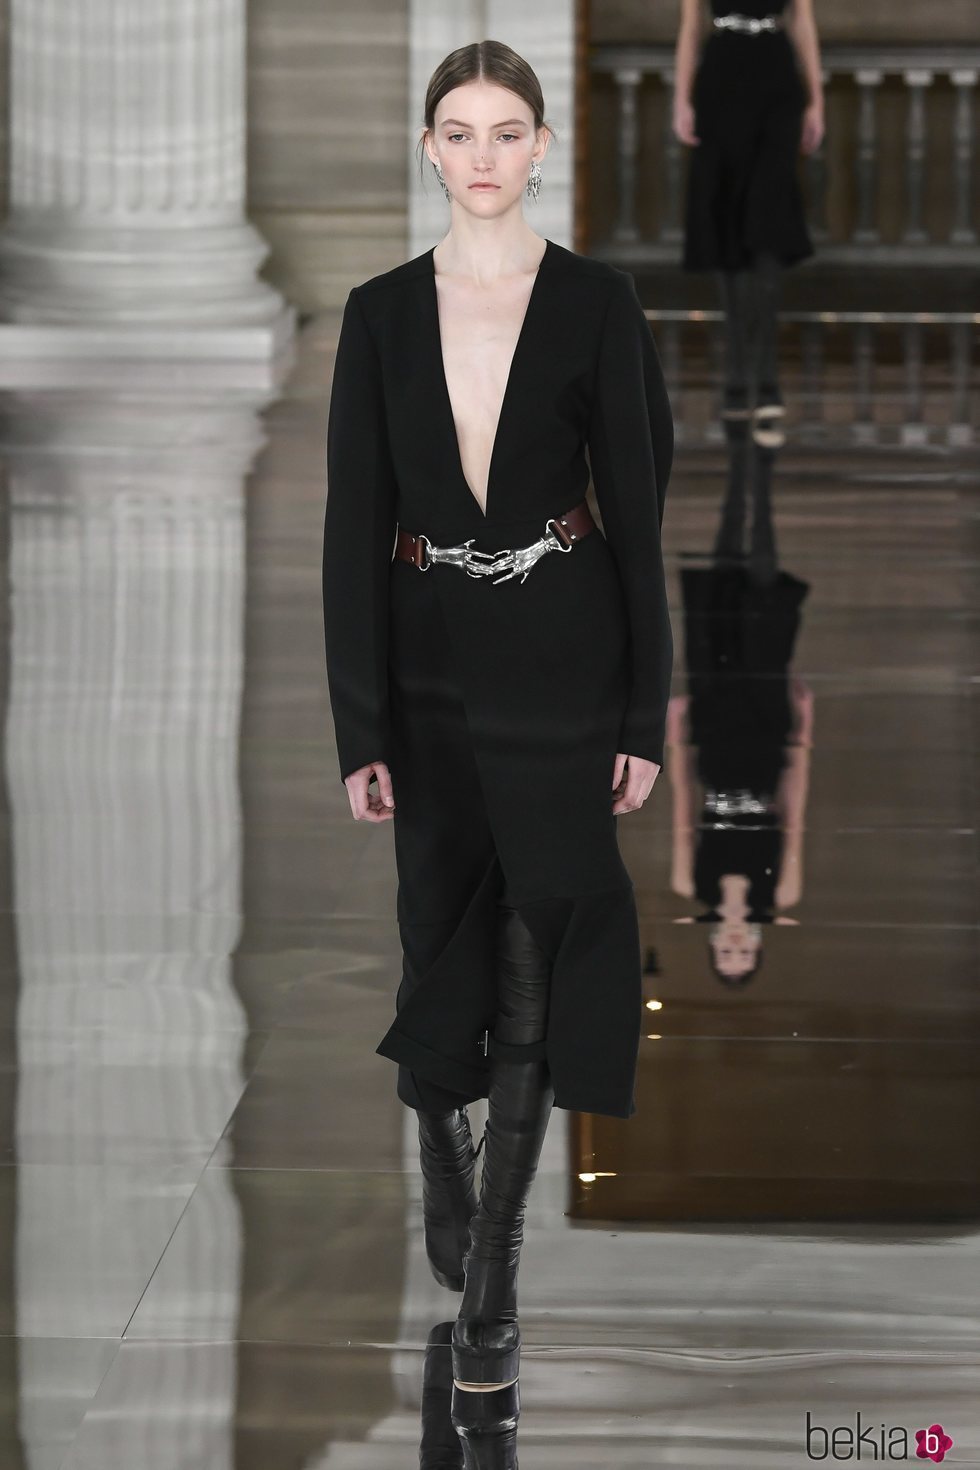 Vestido negro con botas de piel otoño/ invierno 2020 de Victoria Beckham